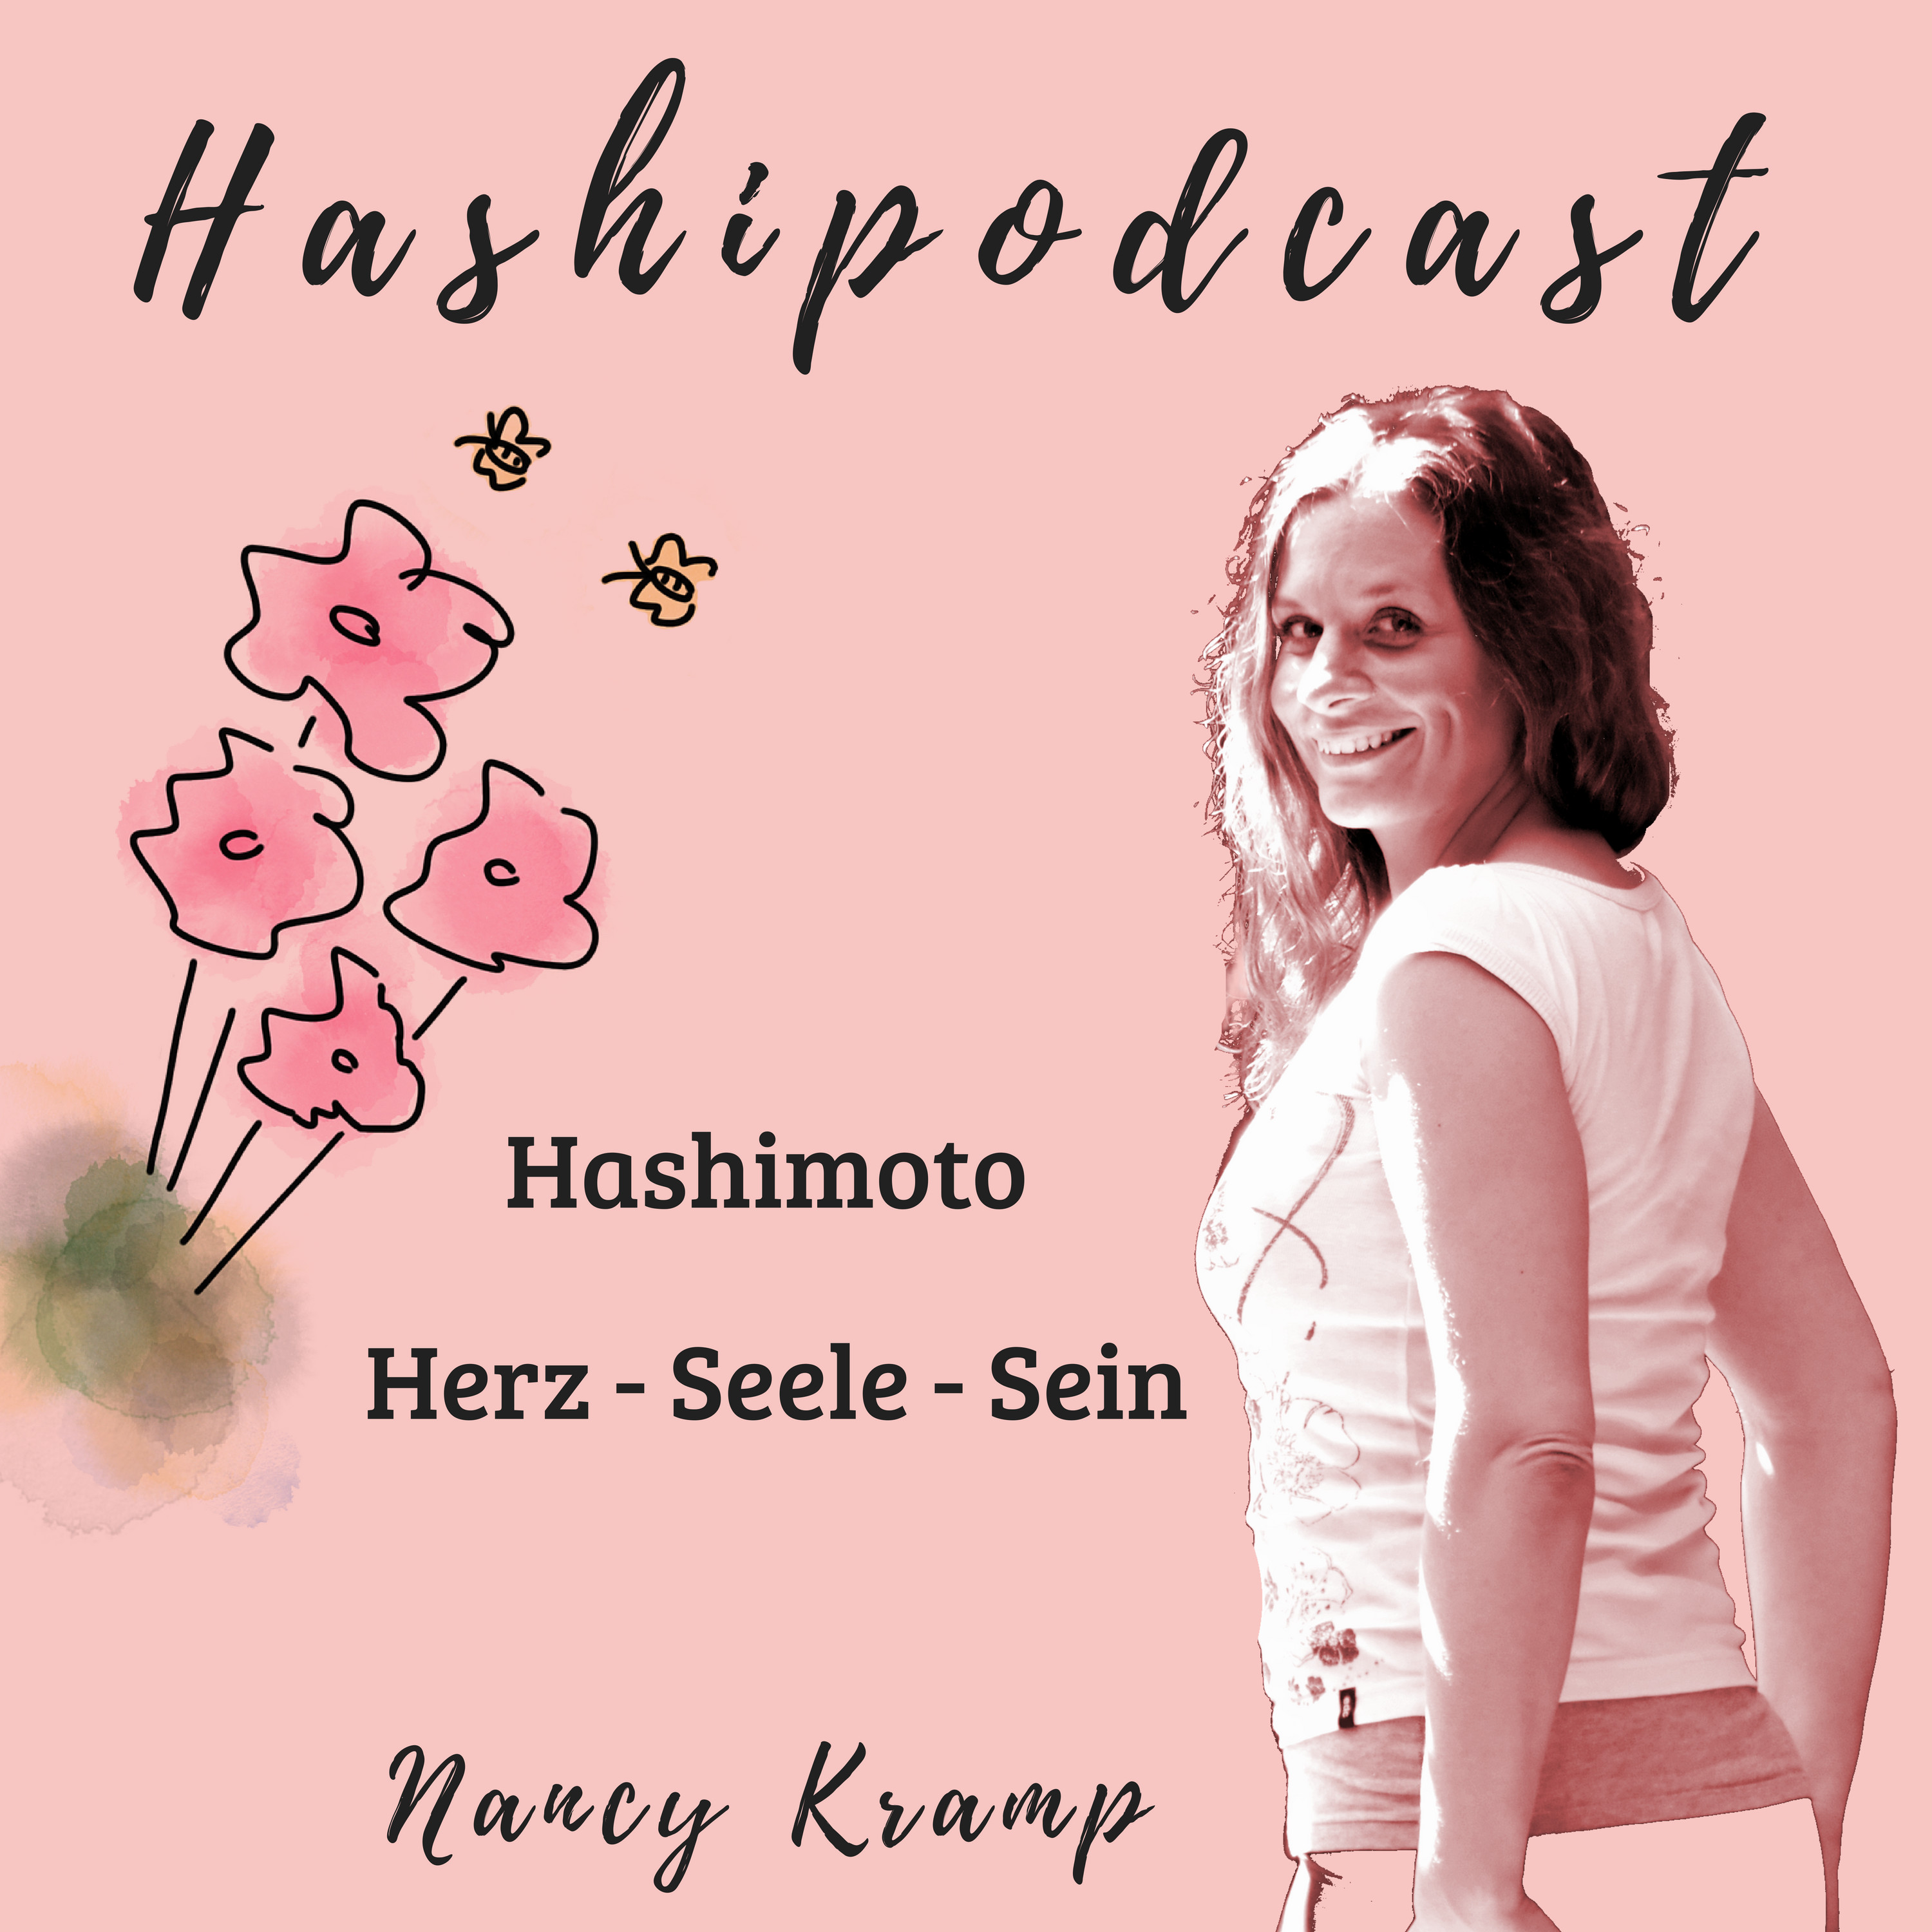 Hashipodcast - Deutschlands erster und einziger Podcast über Hashimoto